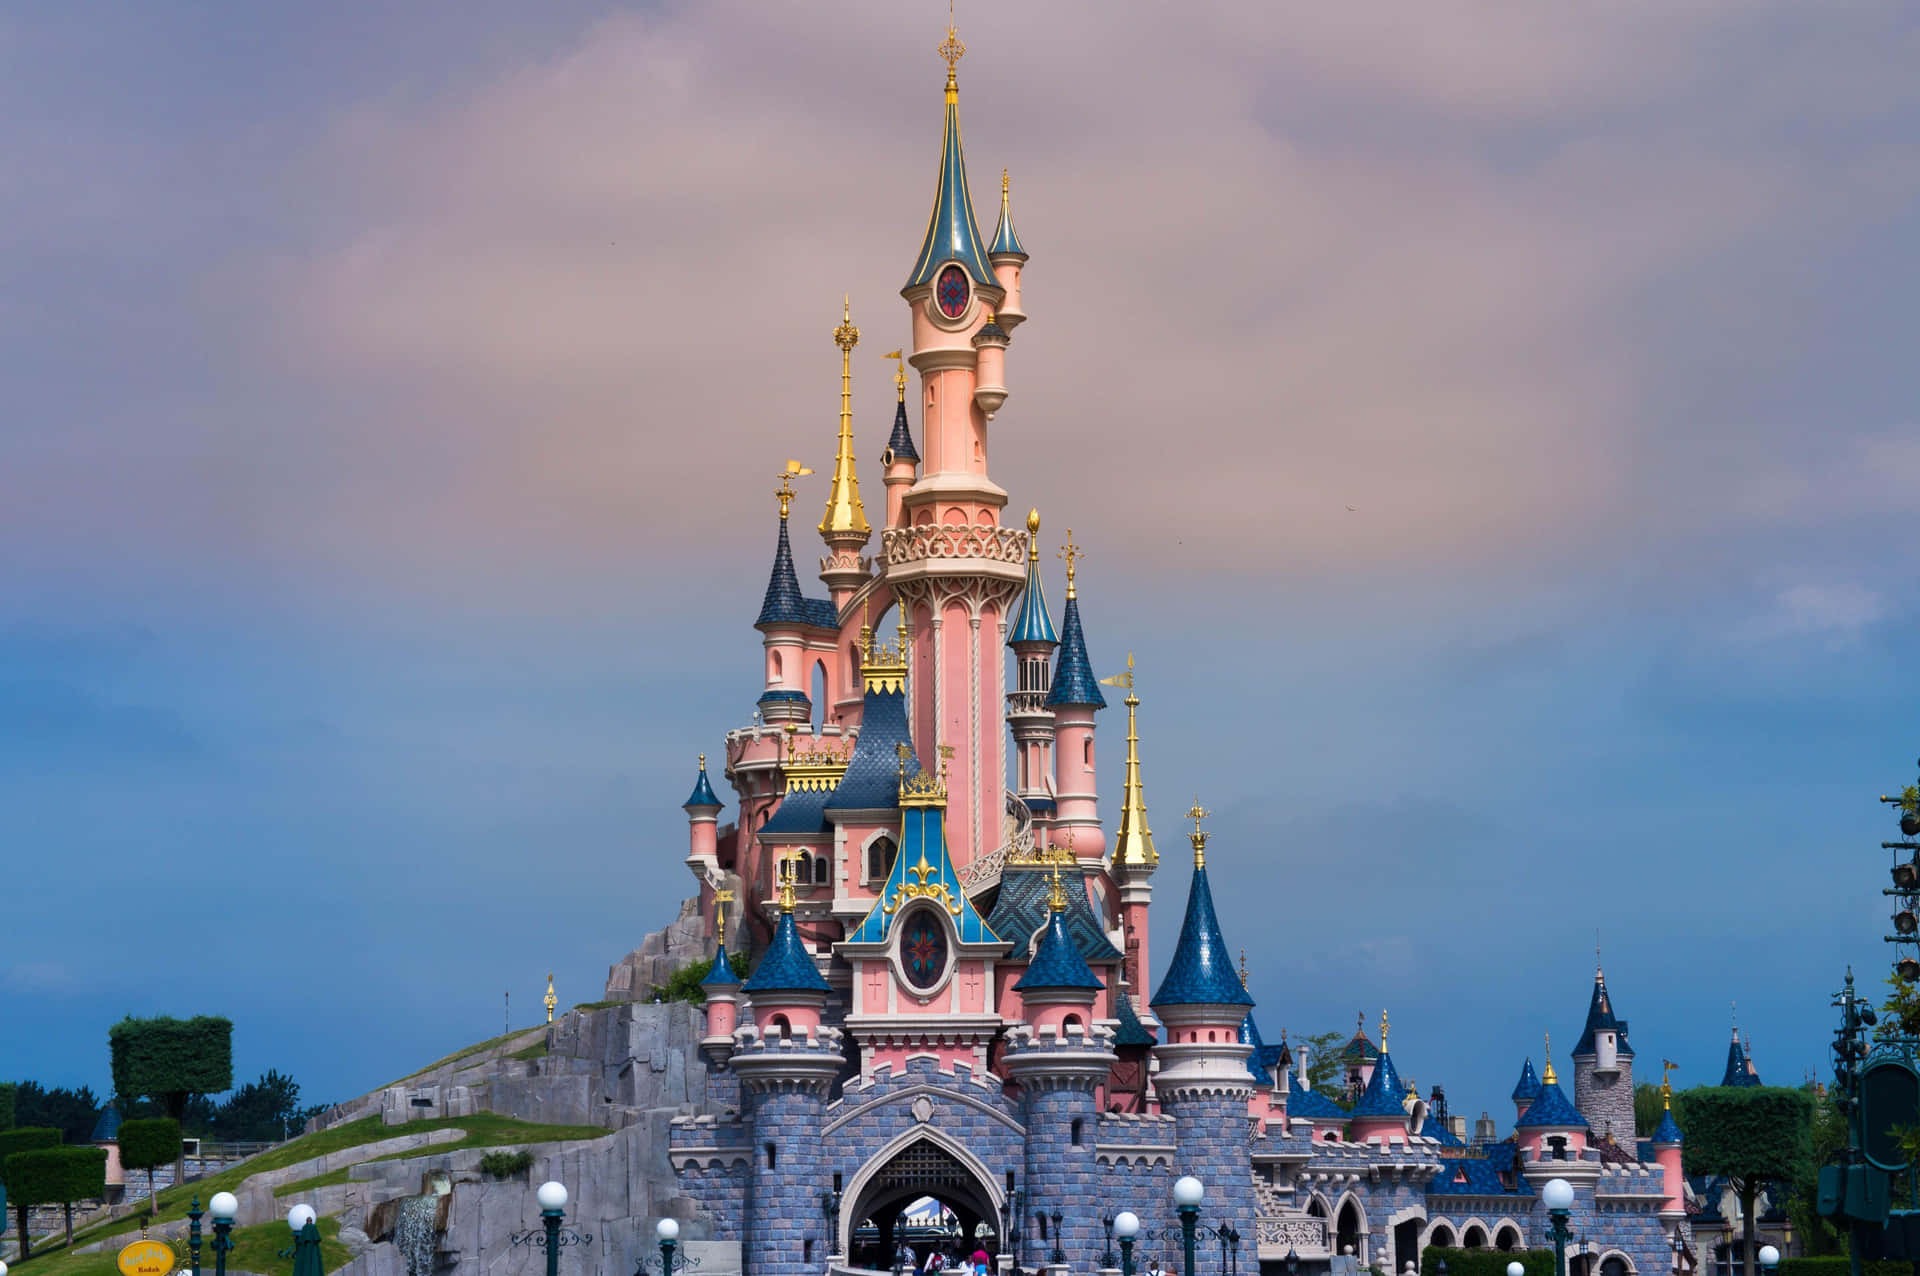 Disneyland Paris Against Dim Sky Wallpaper